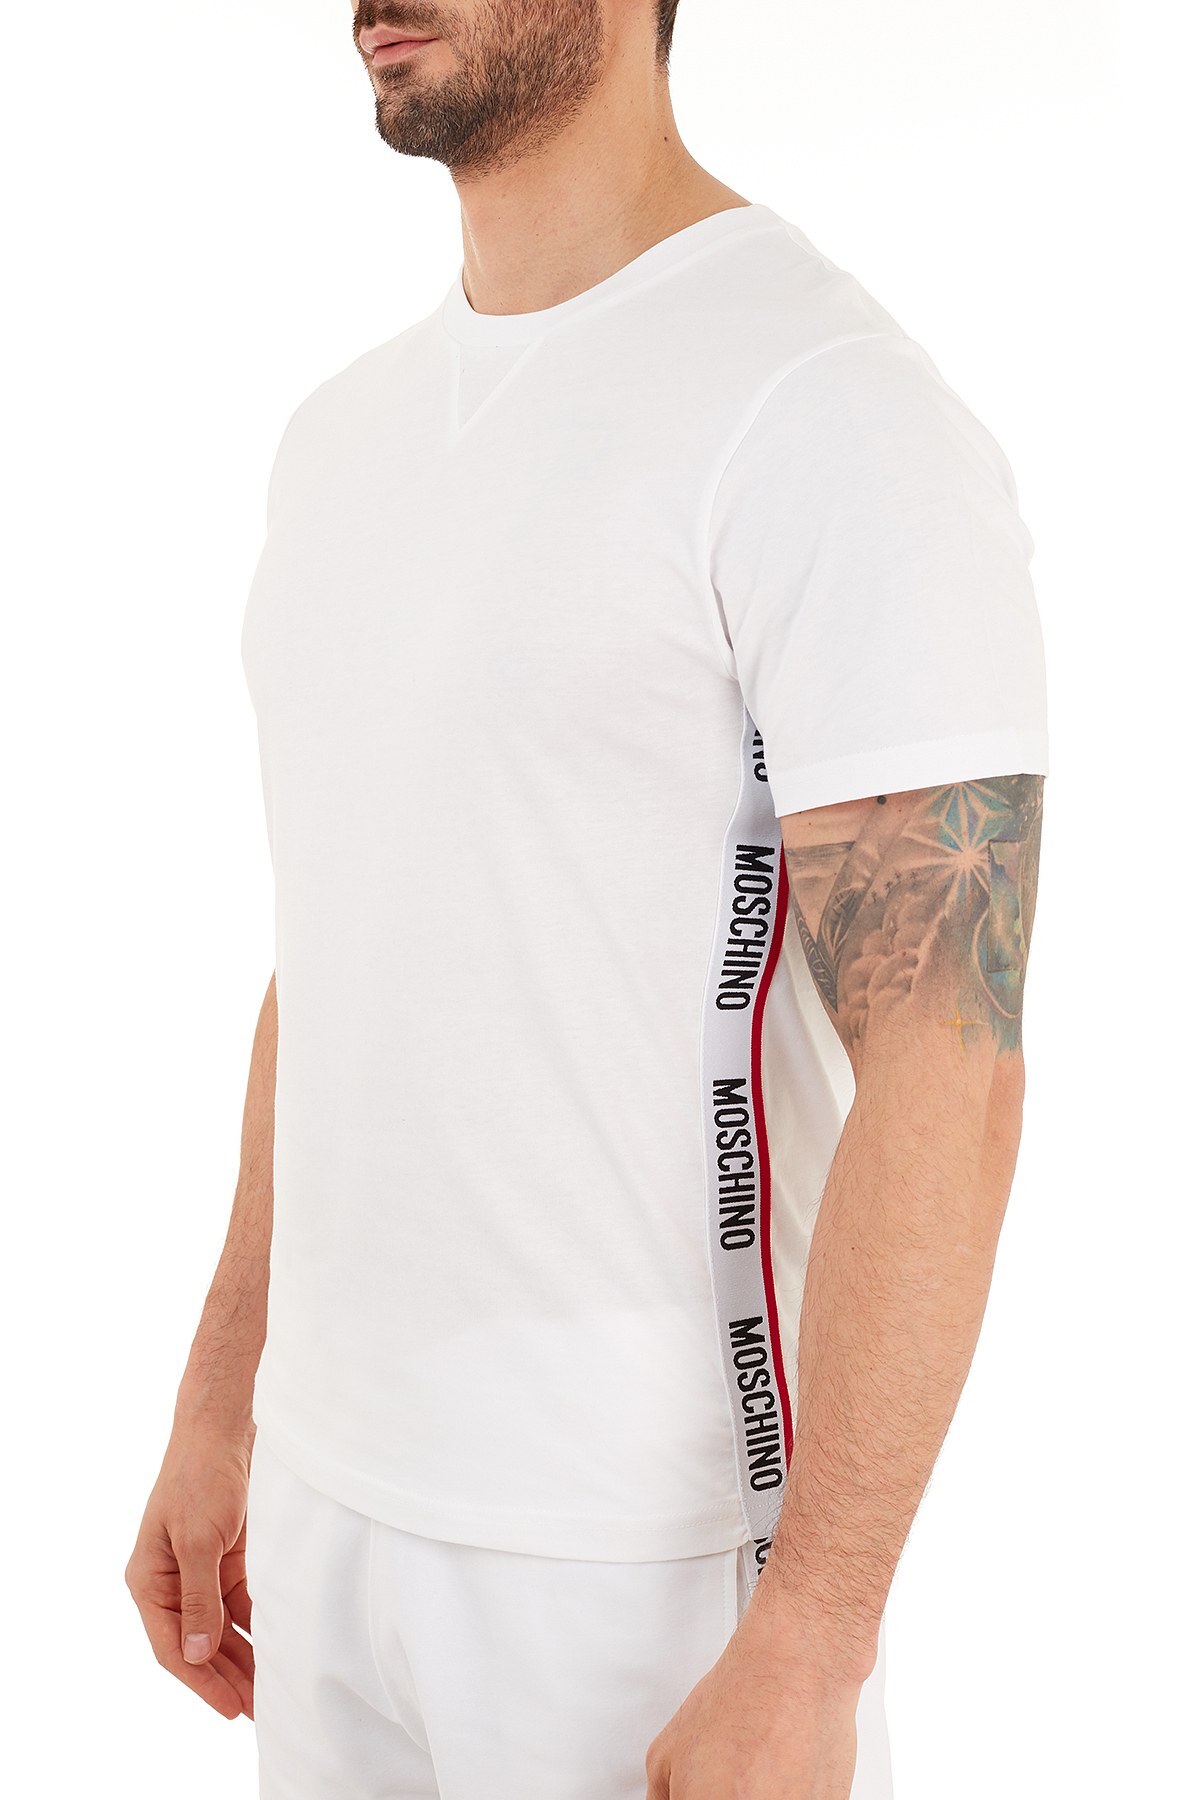 Moschino Logo Bantlı Bisiklet Yaka % 100 Pamuk Erkek T Shirt A1913 8108 0001 BEYAZ